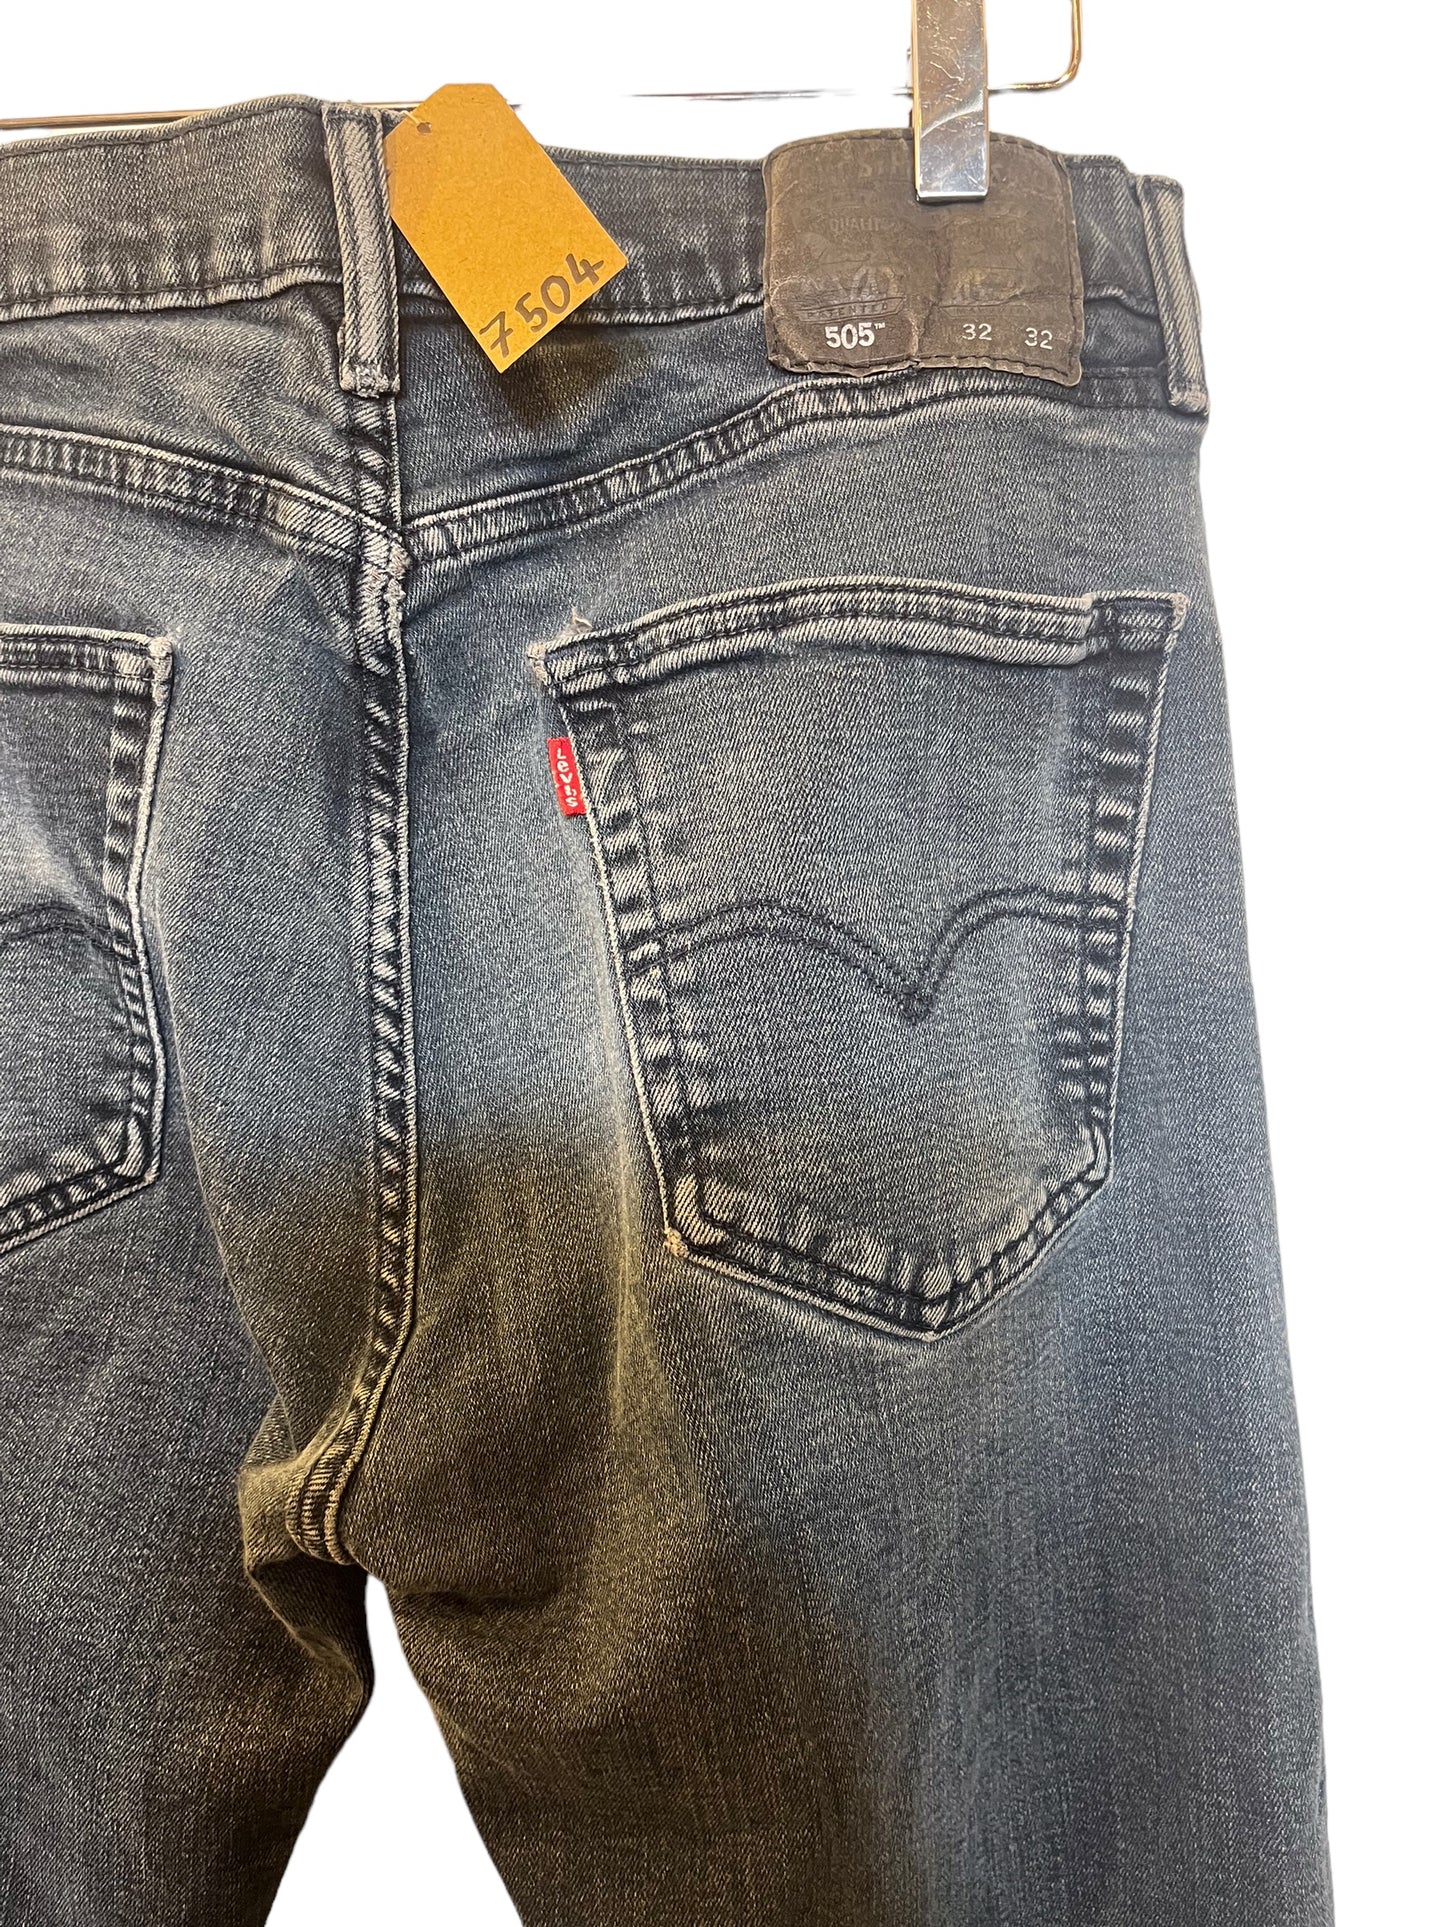 Levi 505 jeans (32x32)